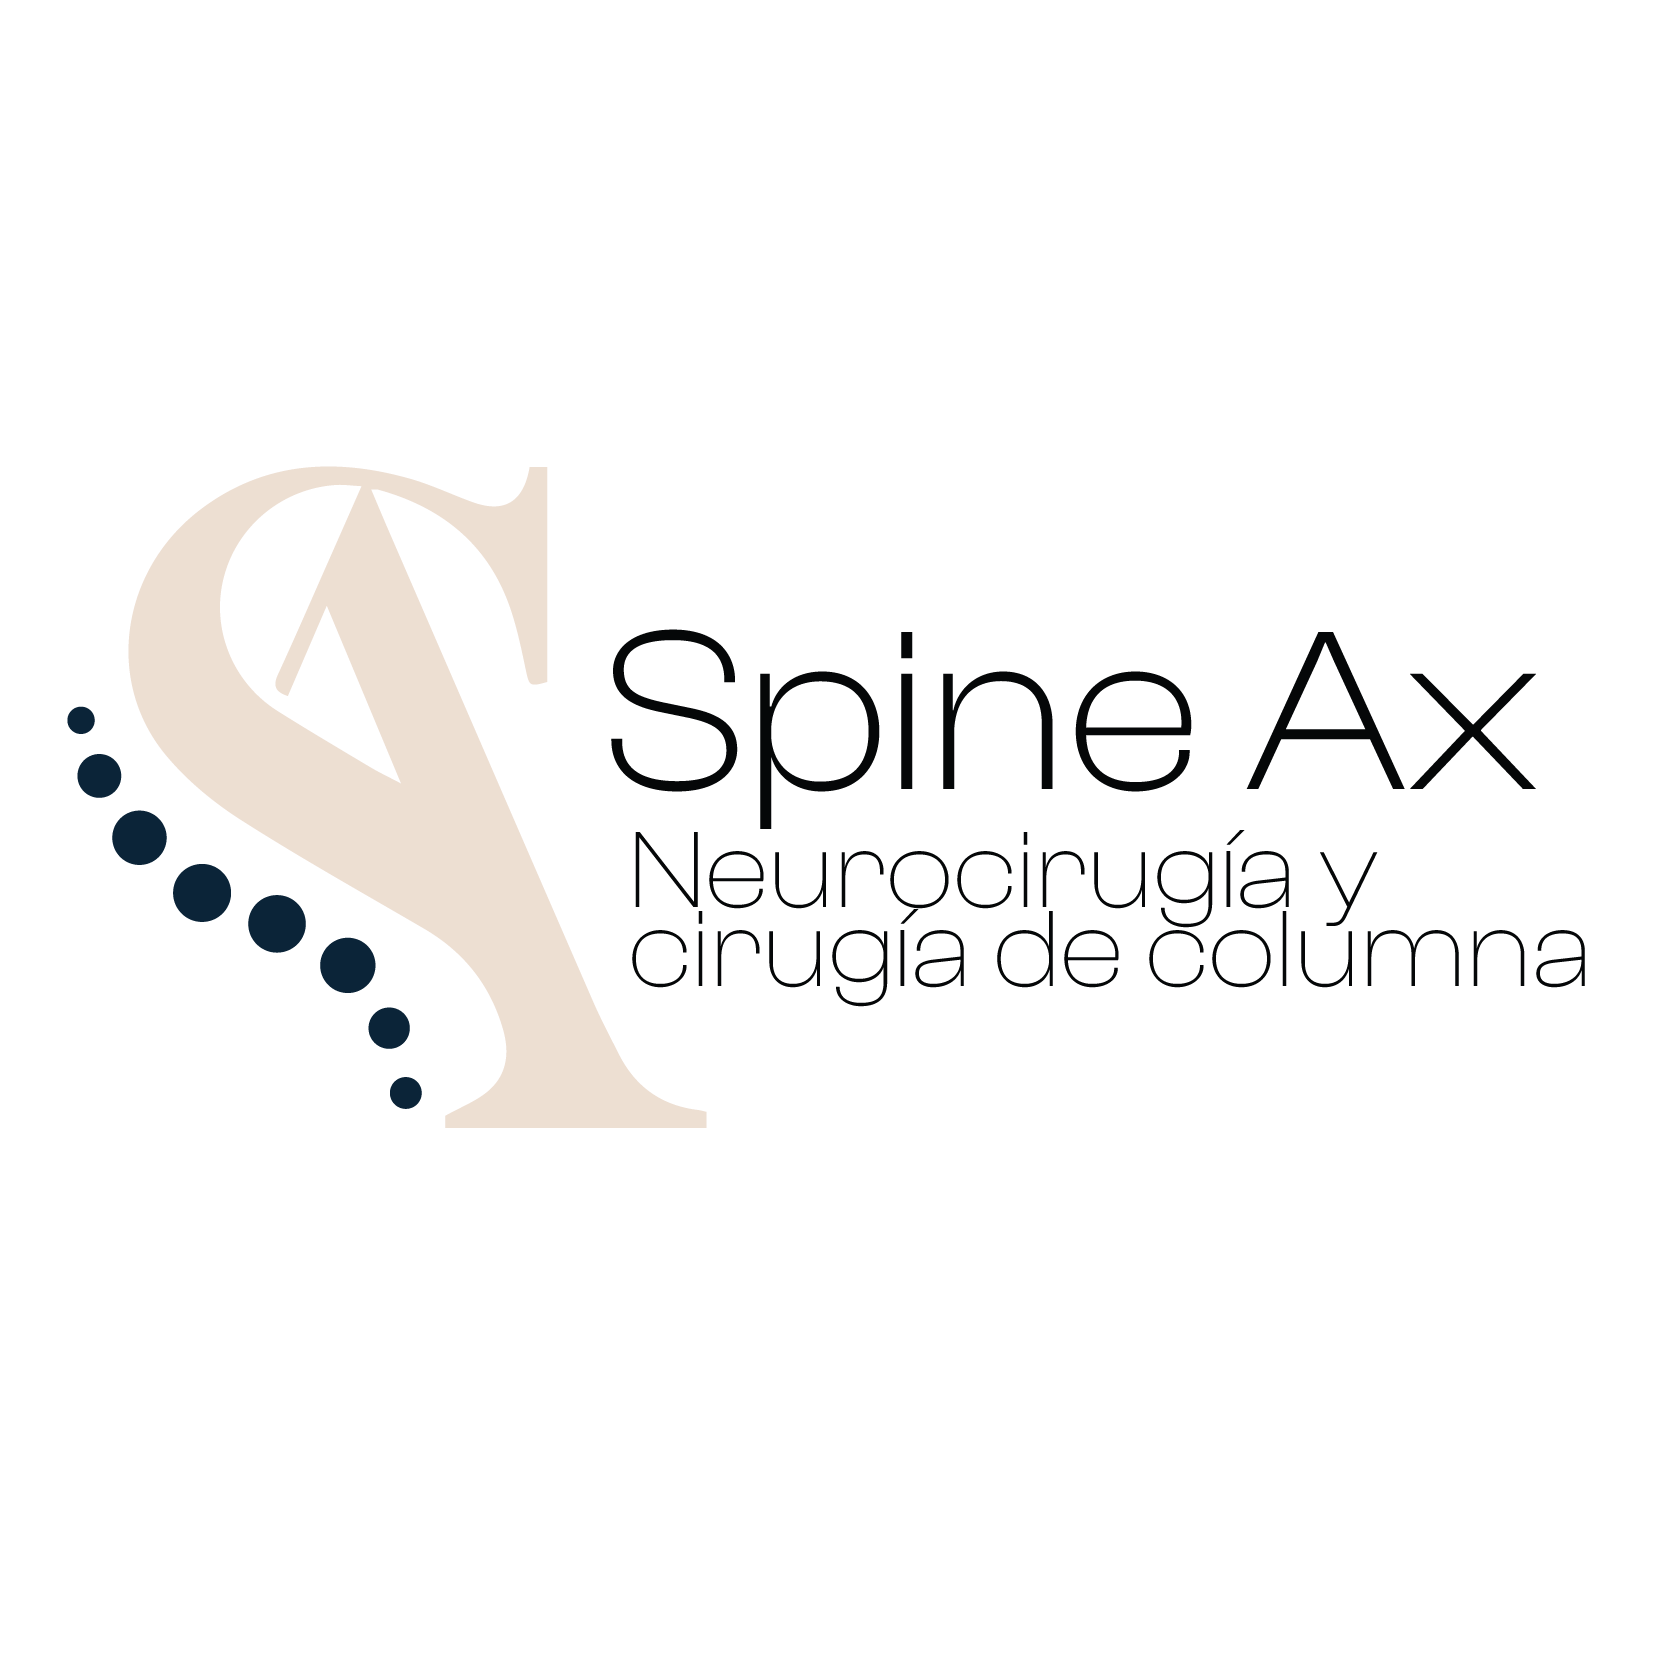 Spine Ax